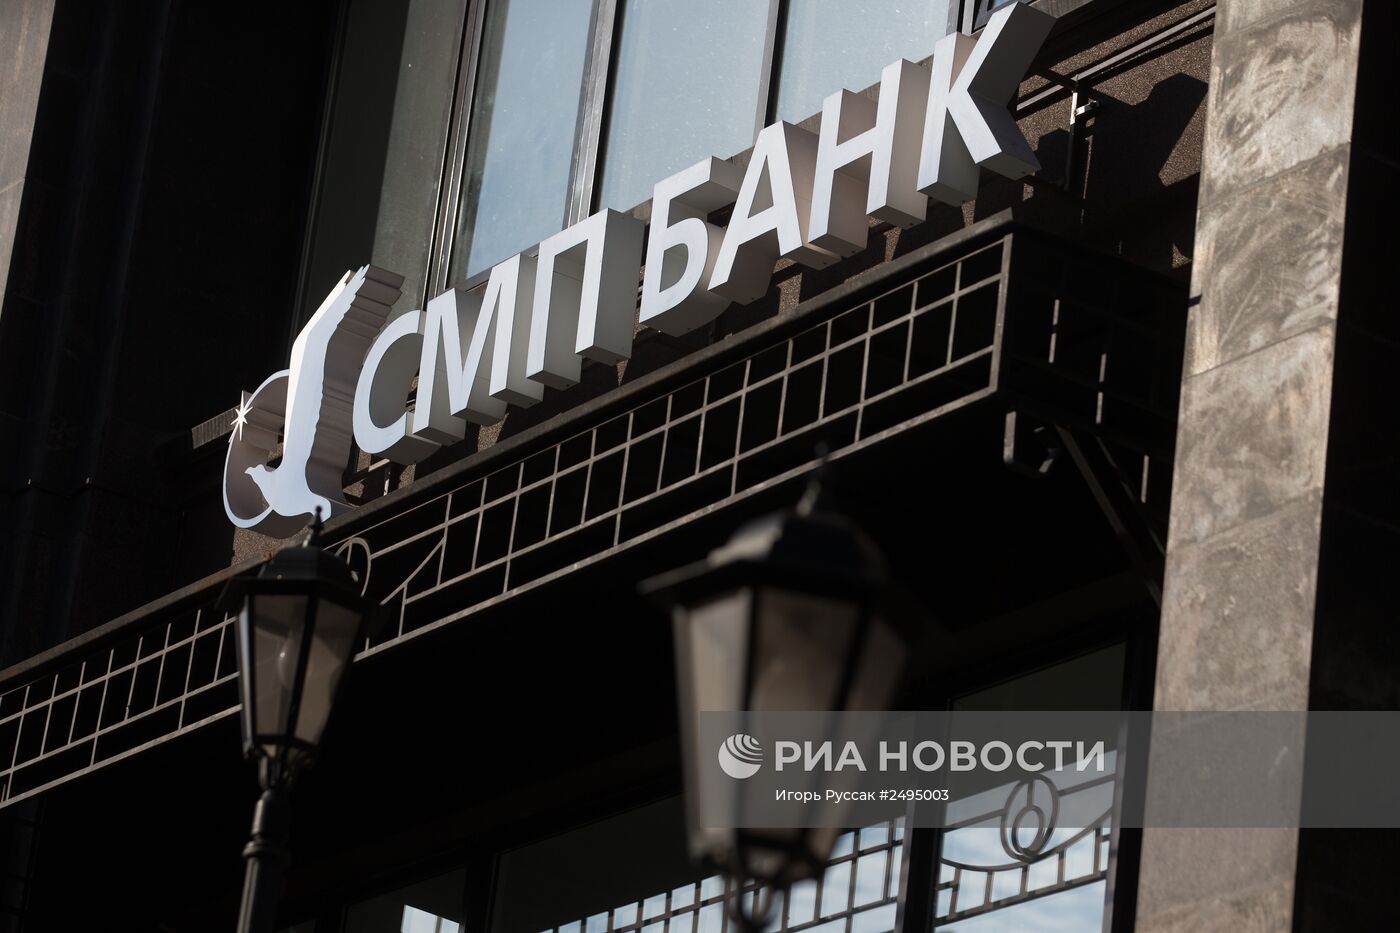 Вывеска ОАО "СМП Банк"